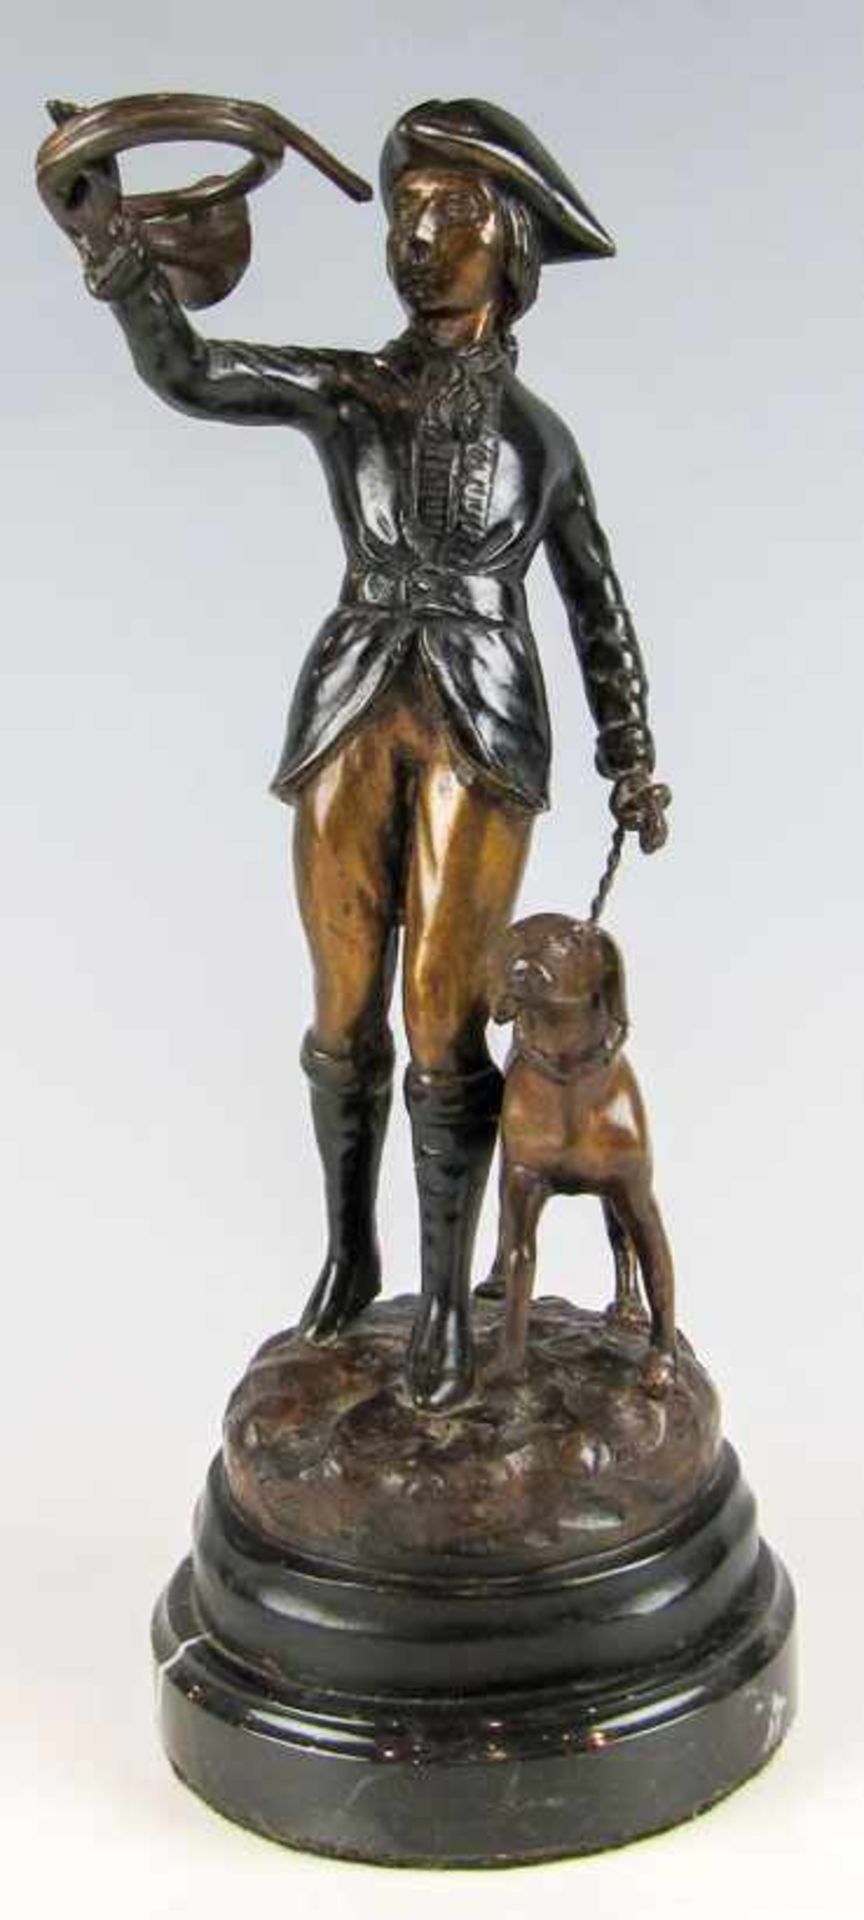 Jäger mit Hund und Jagdhorn. Bronze, hell und dunkel patiniert. Fortschreitend mit Dreispitz und